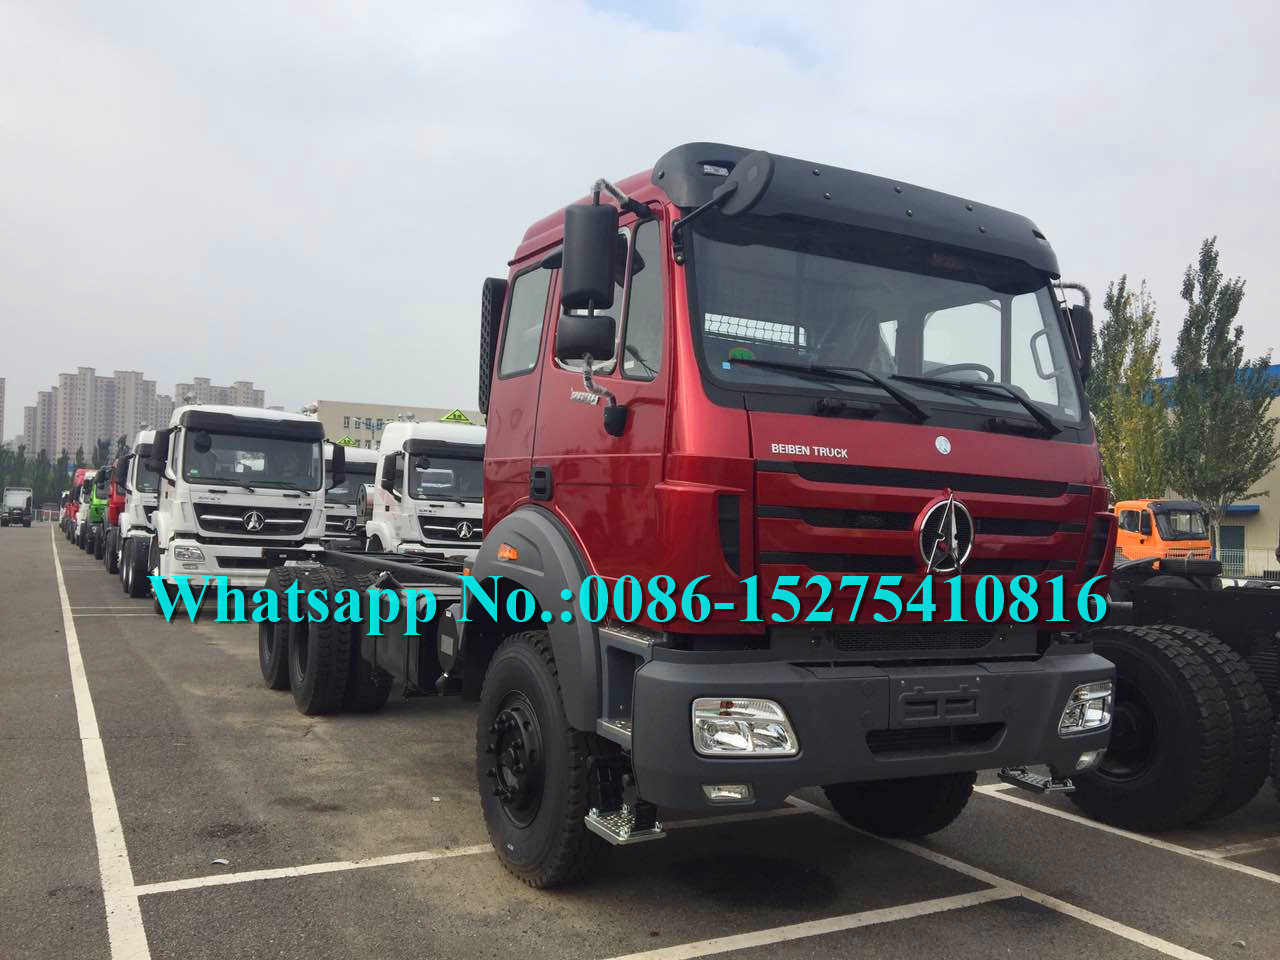 Los militares rojos utilizan el camión del cargo 6x6/el camión del cargo de Off Road adoptan tecnología del Benz